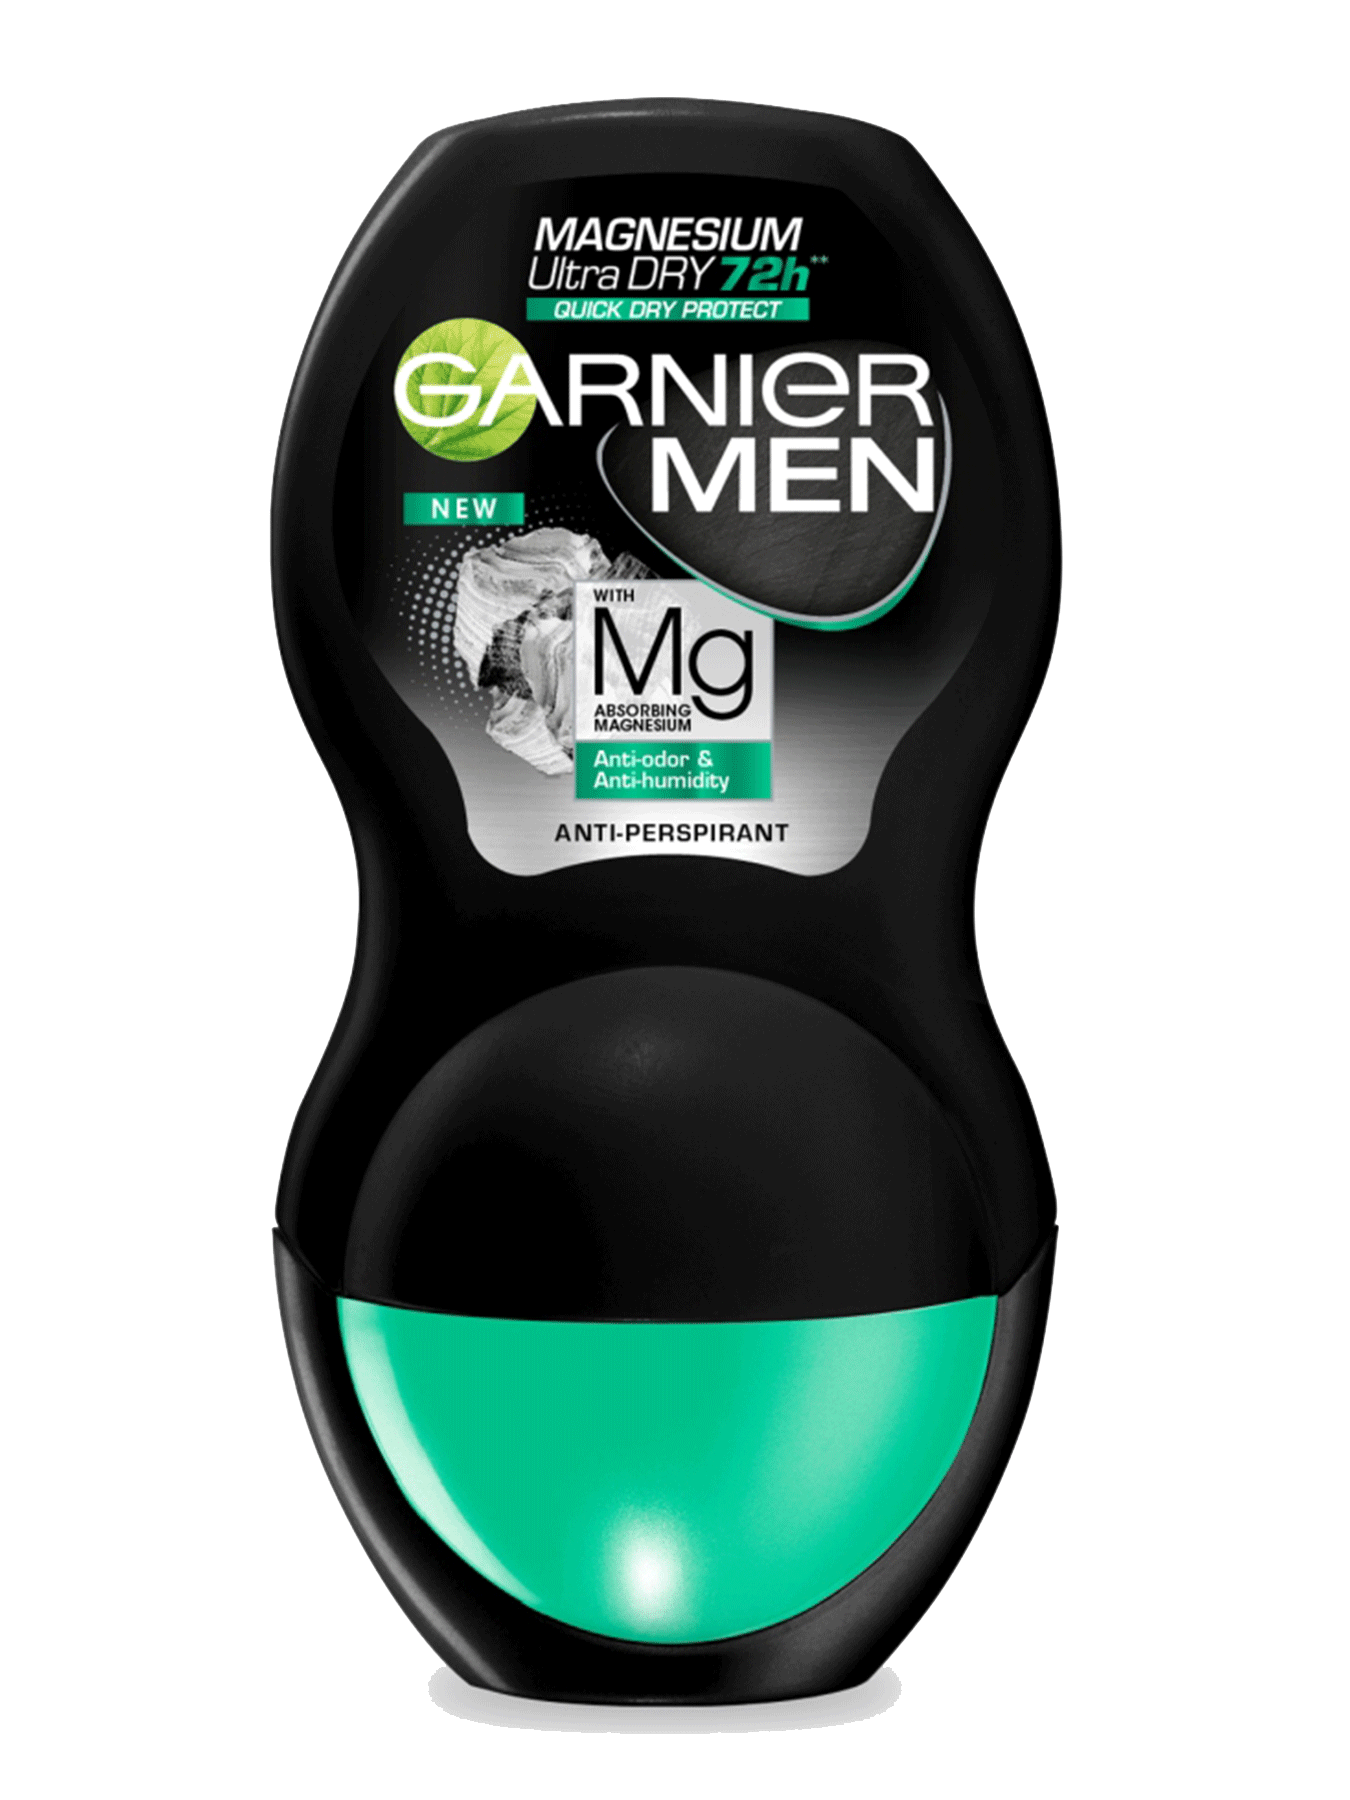 Garnier Mineral Deo Men Magnesium 72h antiperspirant Roll-on